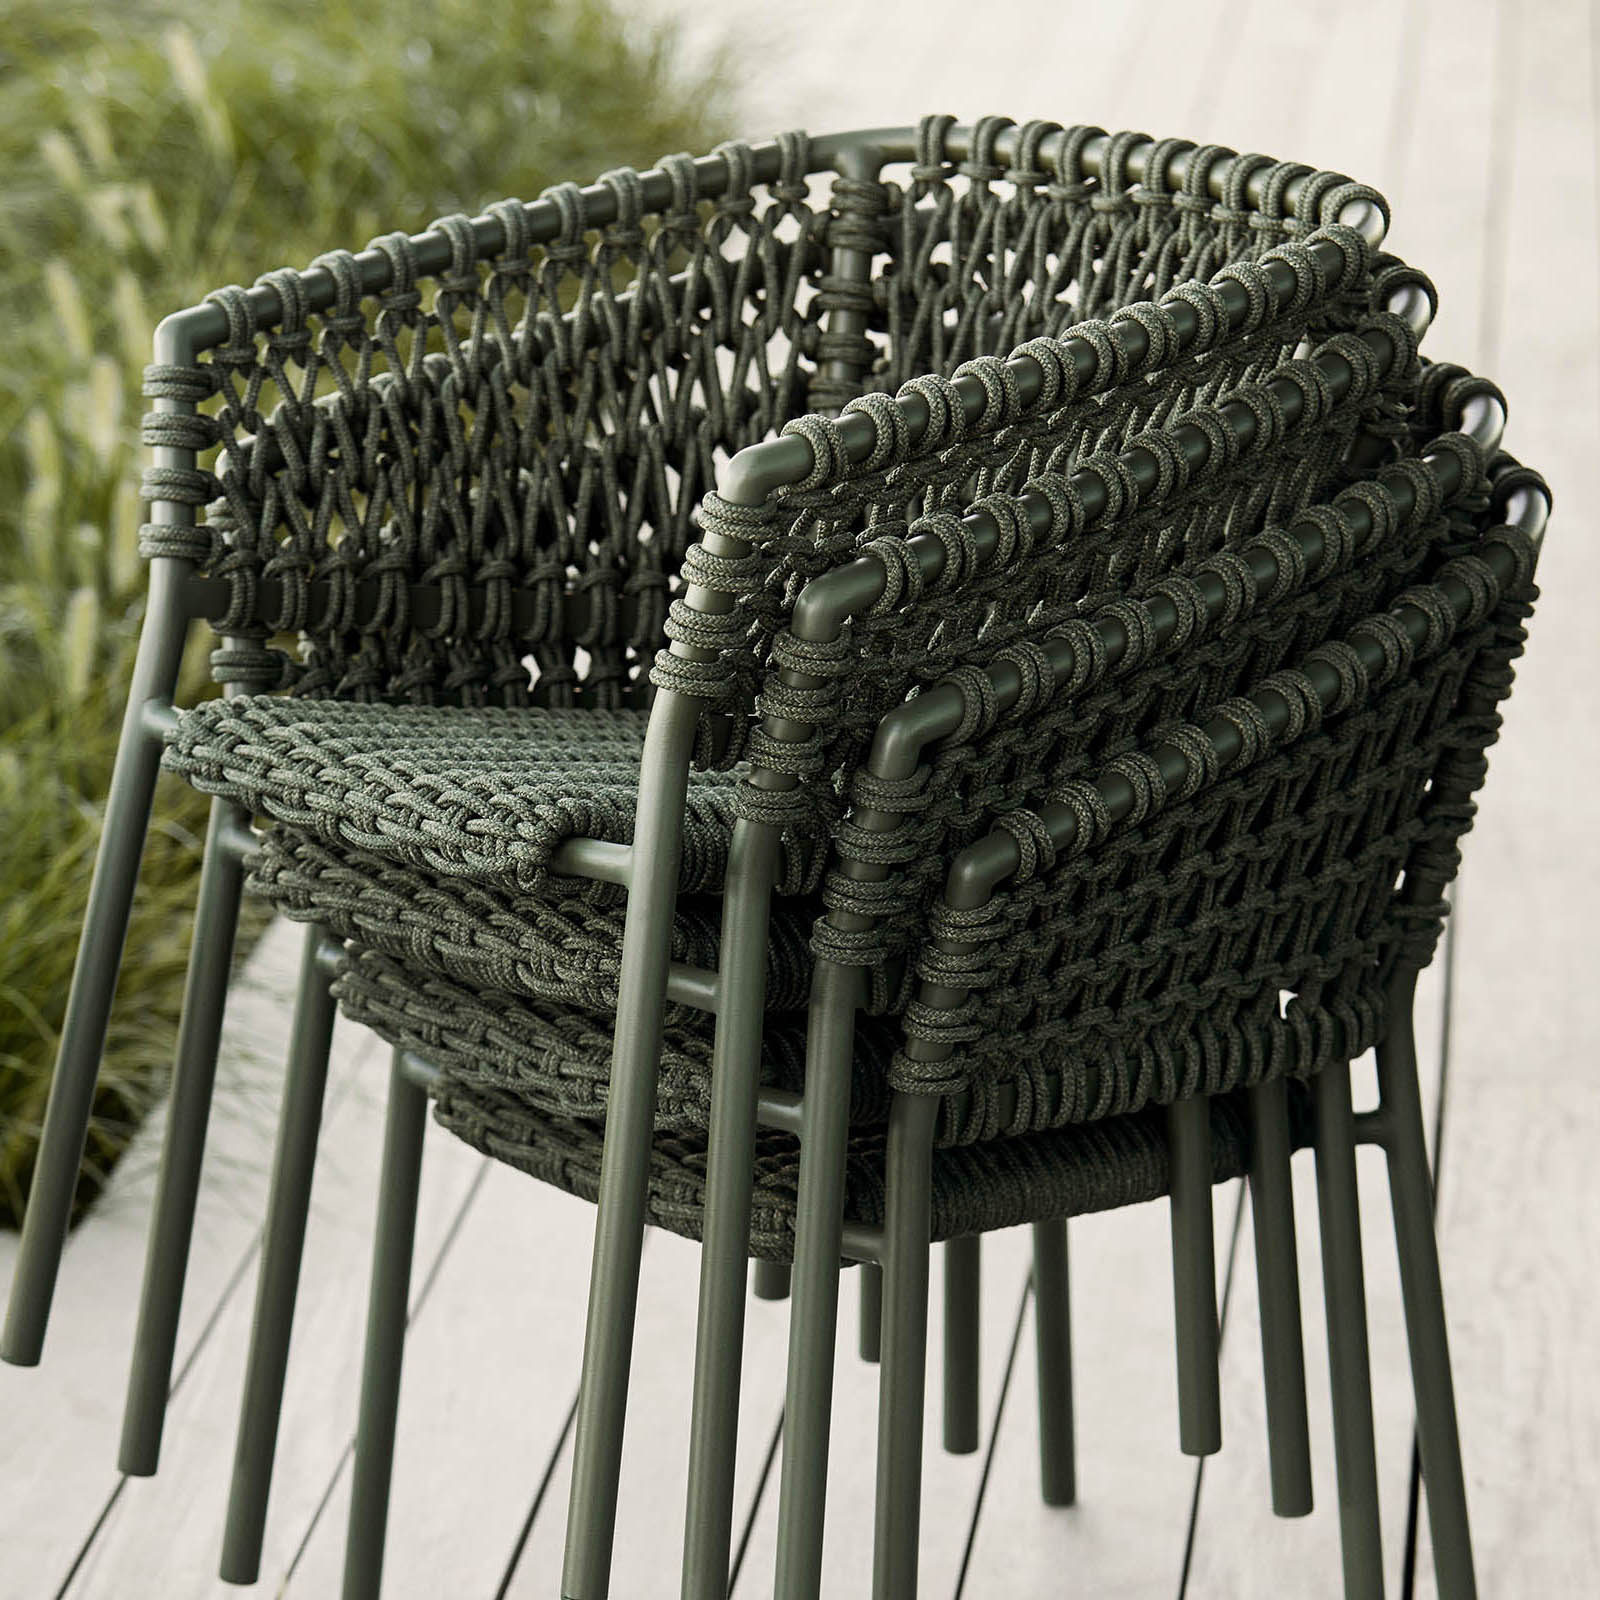 Ocean Stuhl aus Aluminium in Natural mit Kissen aus Cane-line Natté in Taupe